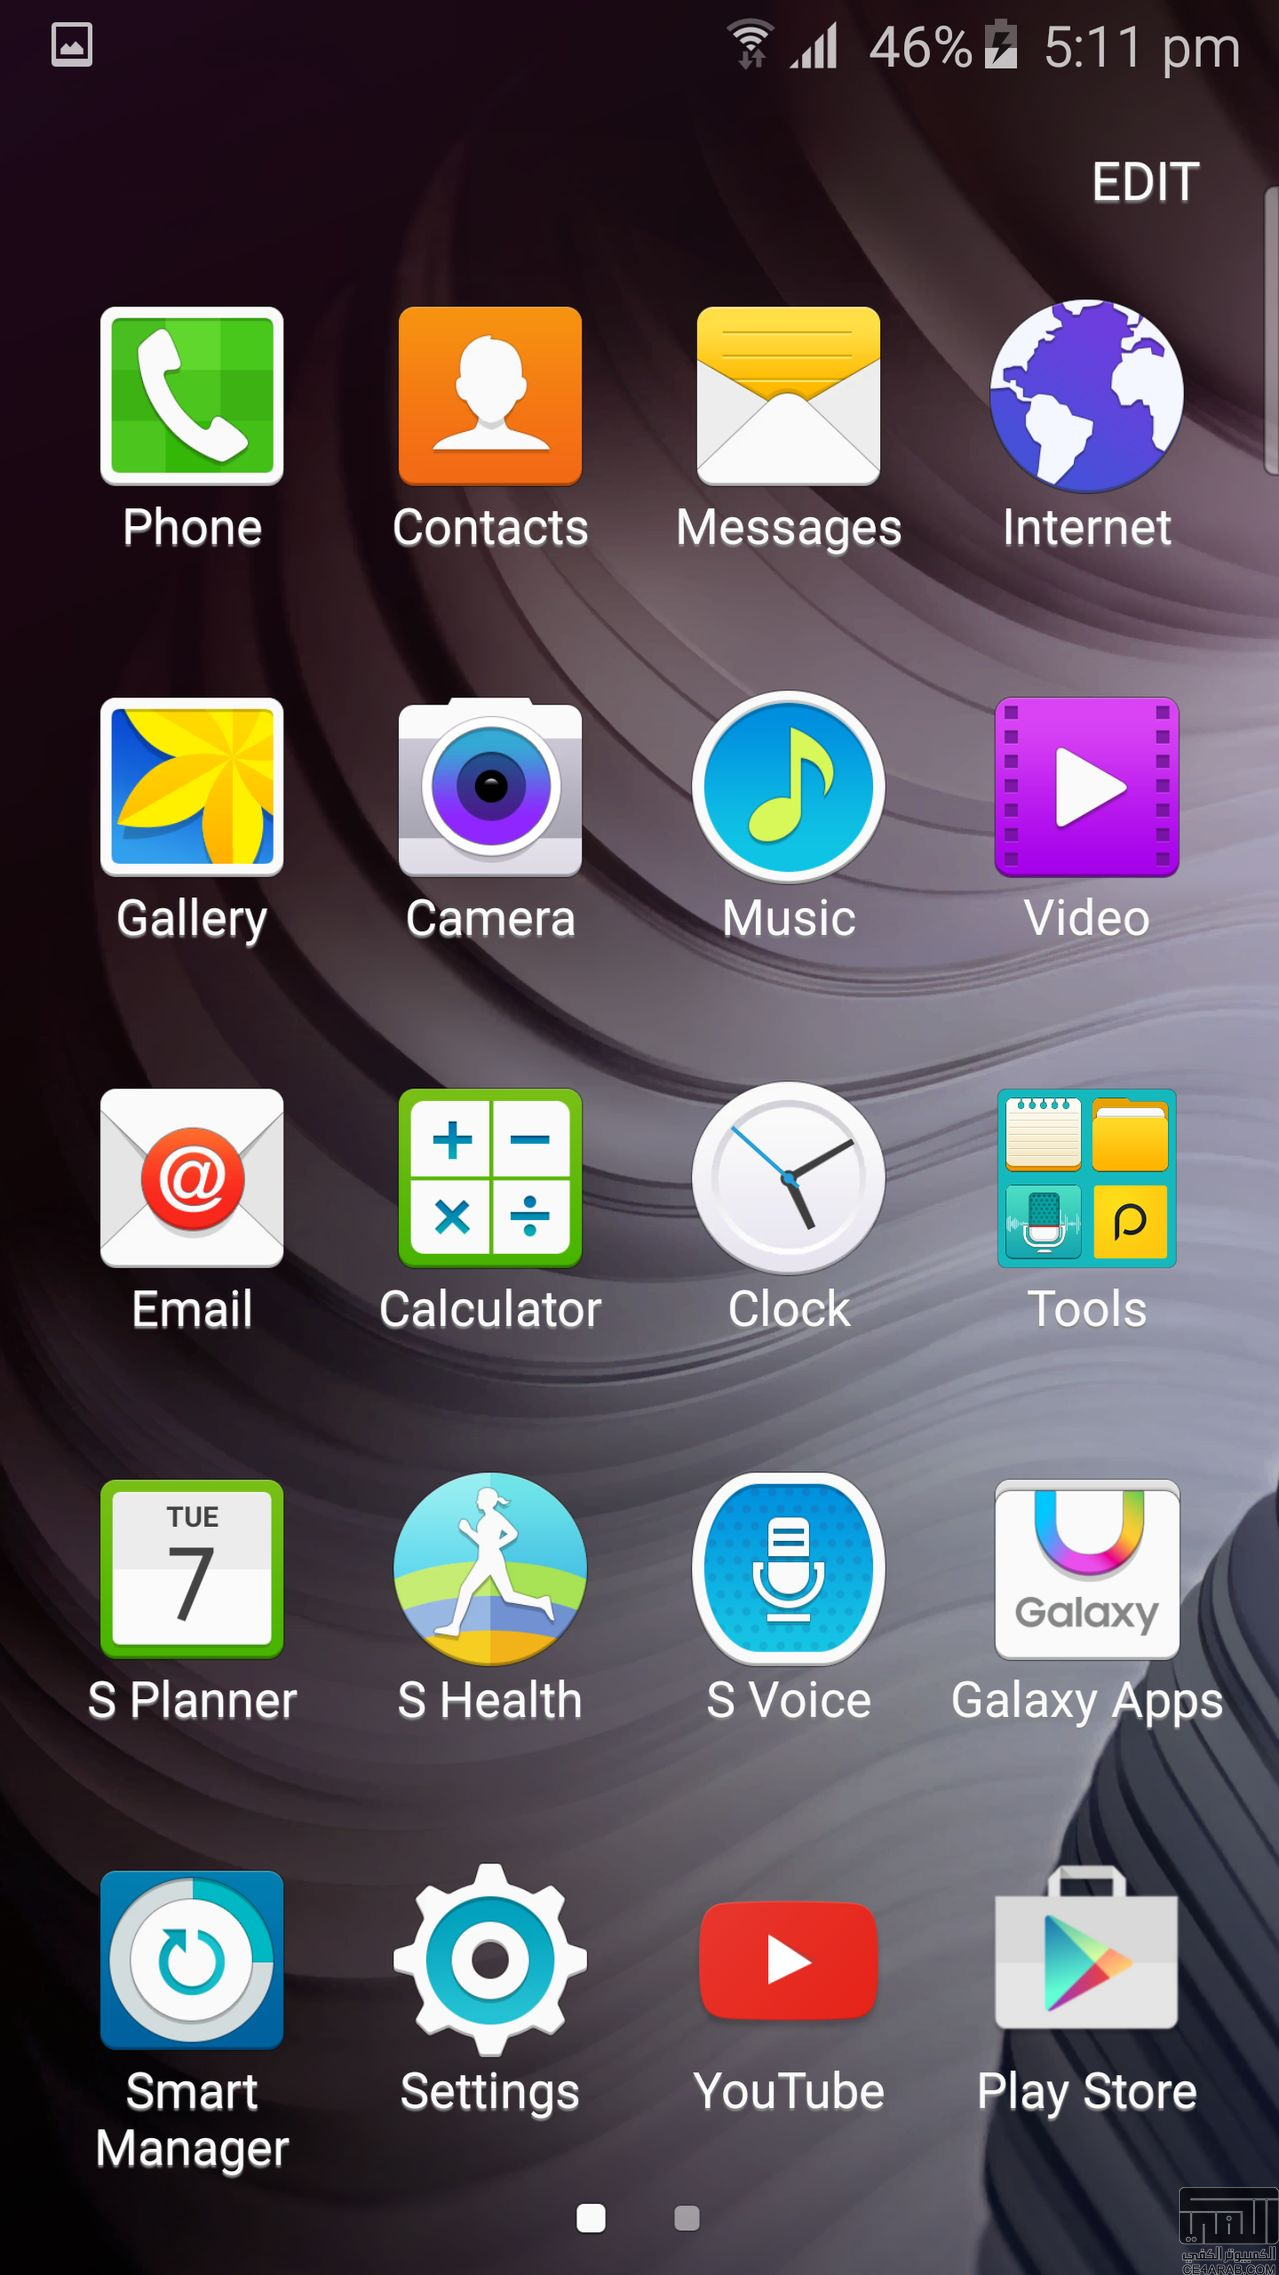 حصري: استعراض هاتف Galaxy S6 edge